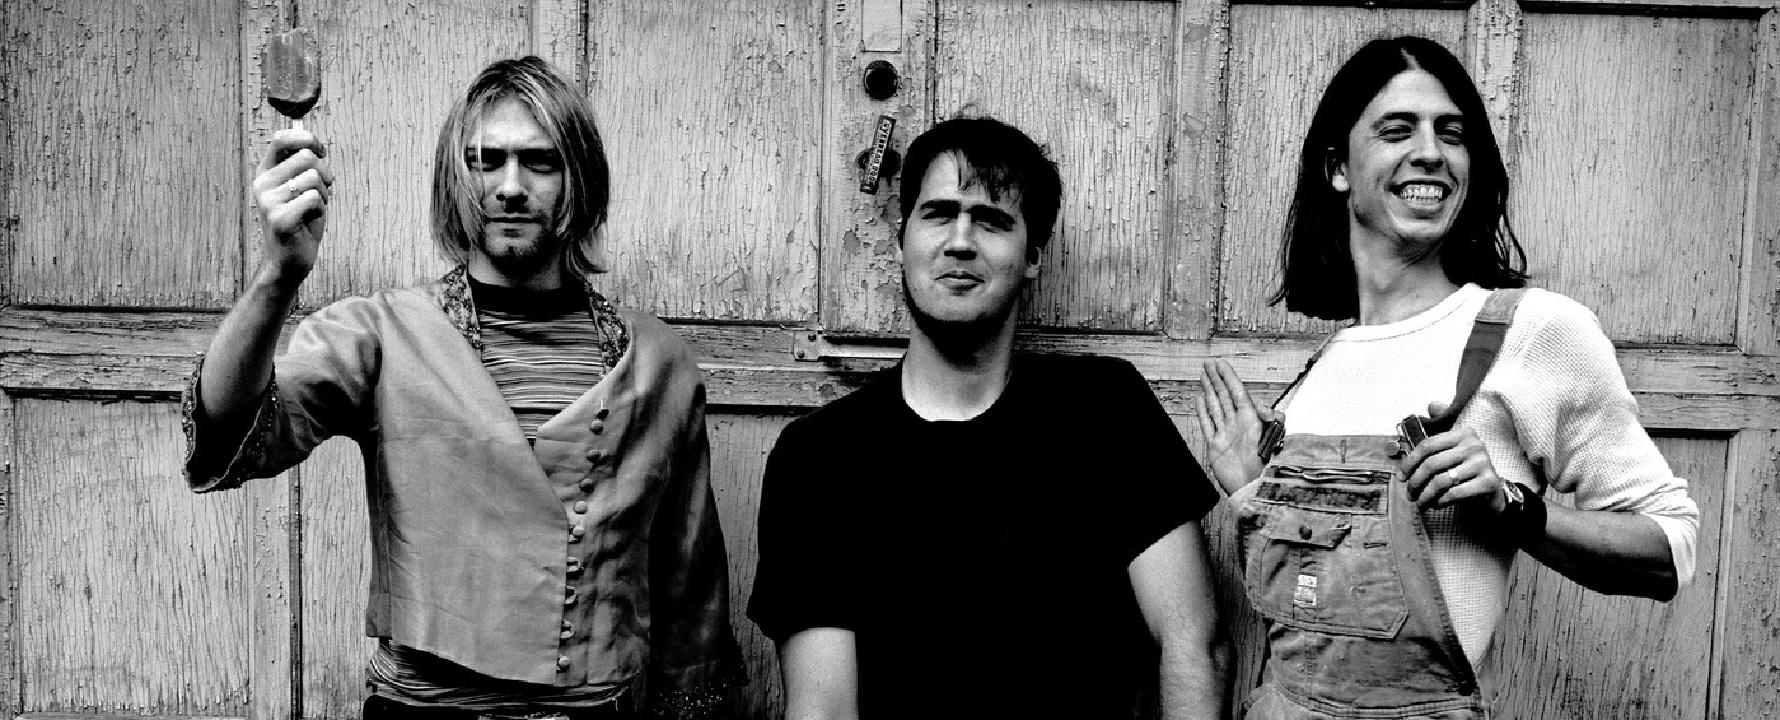 Fotografia promocional de Nirvana.